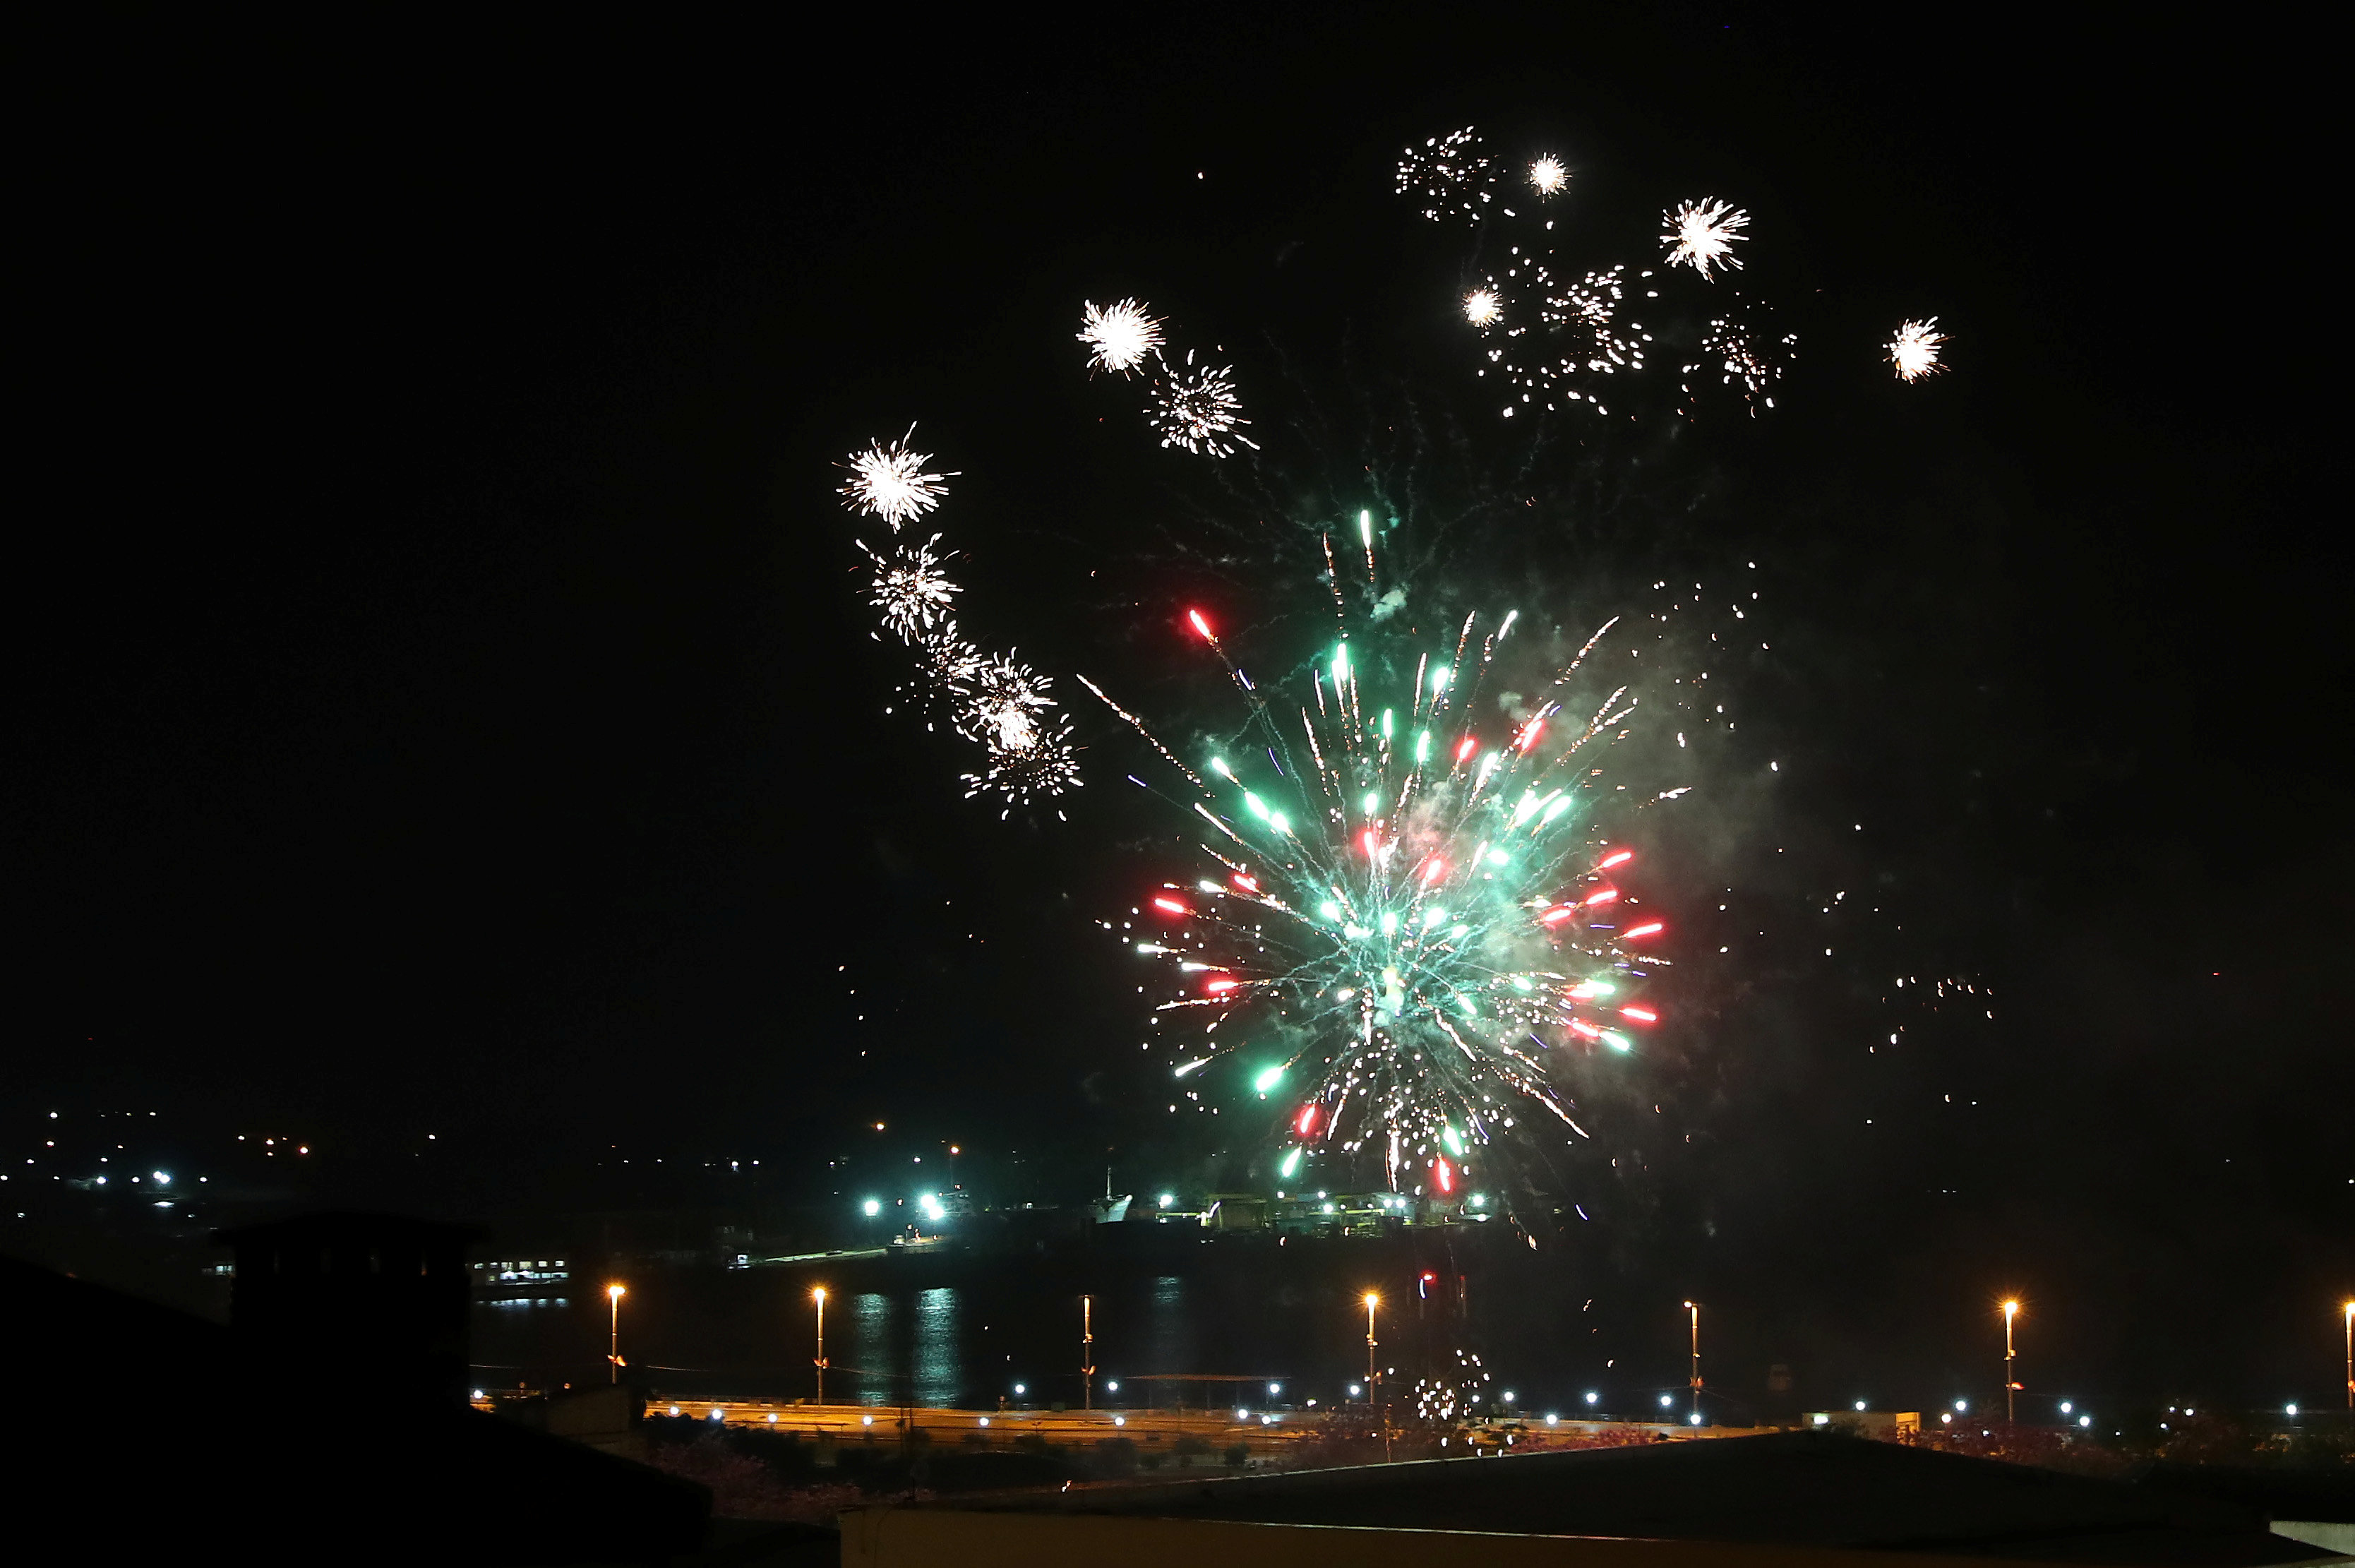 الألعاب النارية تغطى سماء باراجواى احتفالا بالرئيس الجديد